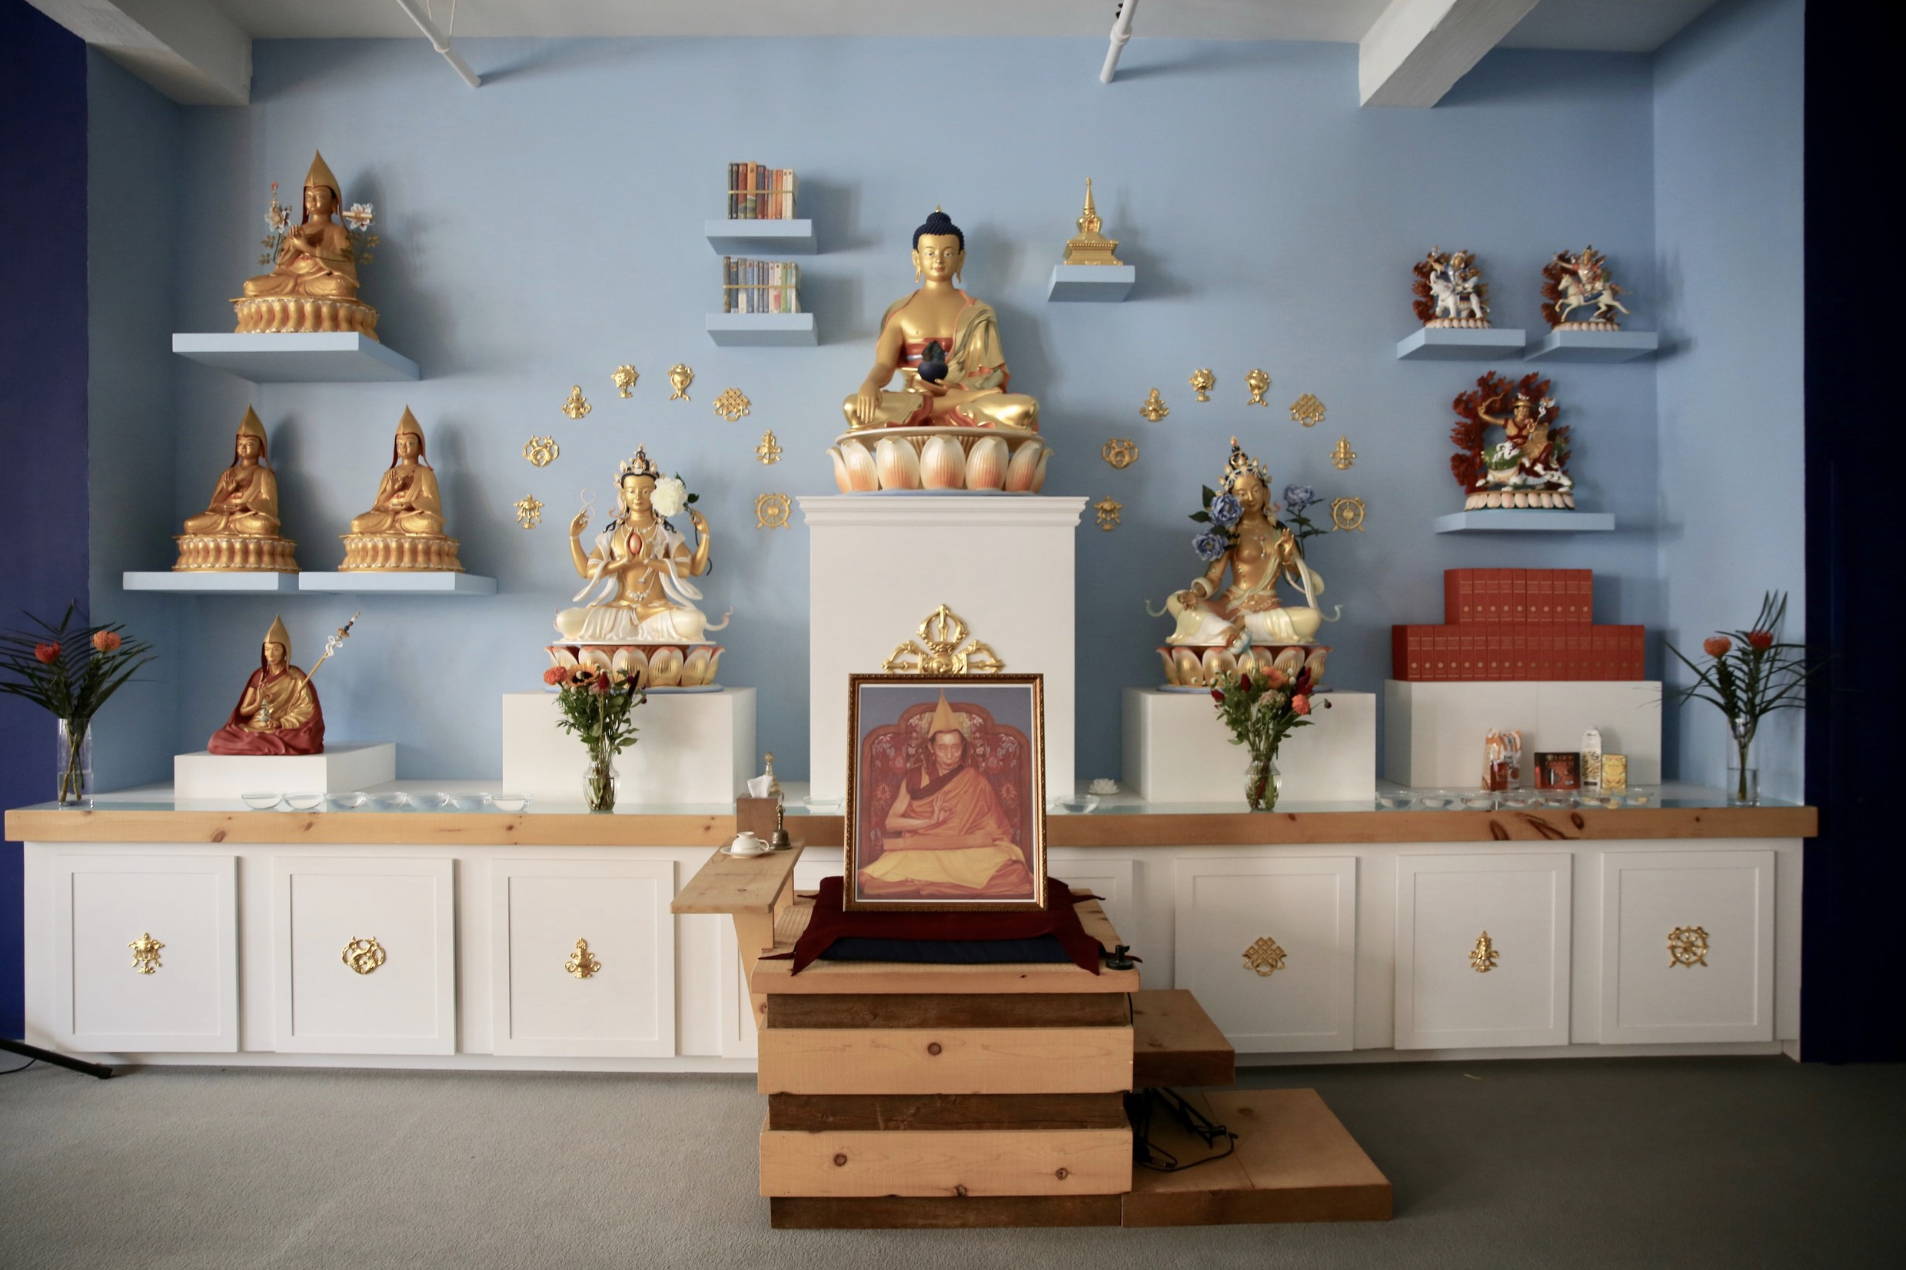 kadampa-williamsburg-nyc-shrine-meditation-room